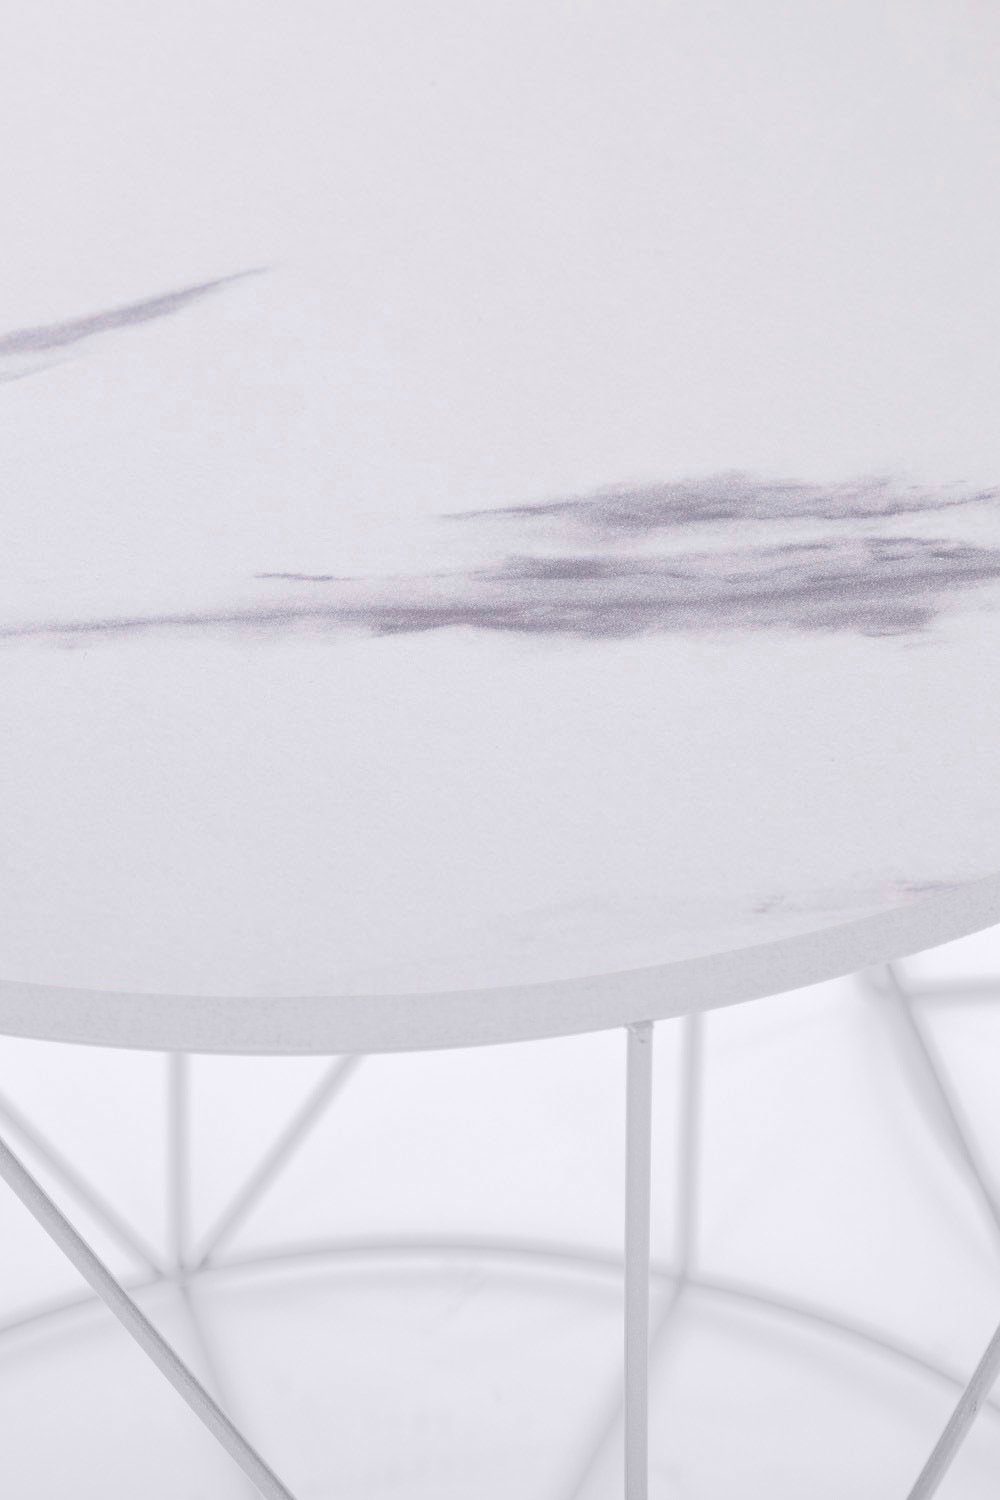 Flair Gestell, Naturbelassene my Beistelltisch Weiß Skandinavischem im Design Weiß Rundini, Platte Weiß/Marmor Design | | lackiertem